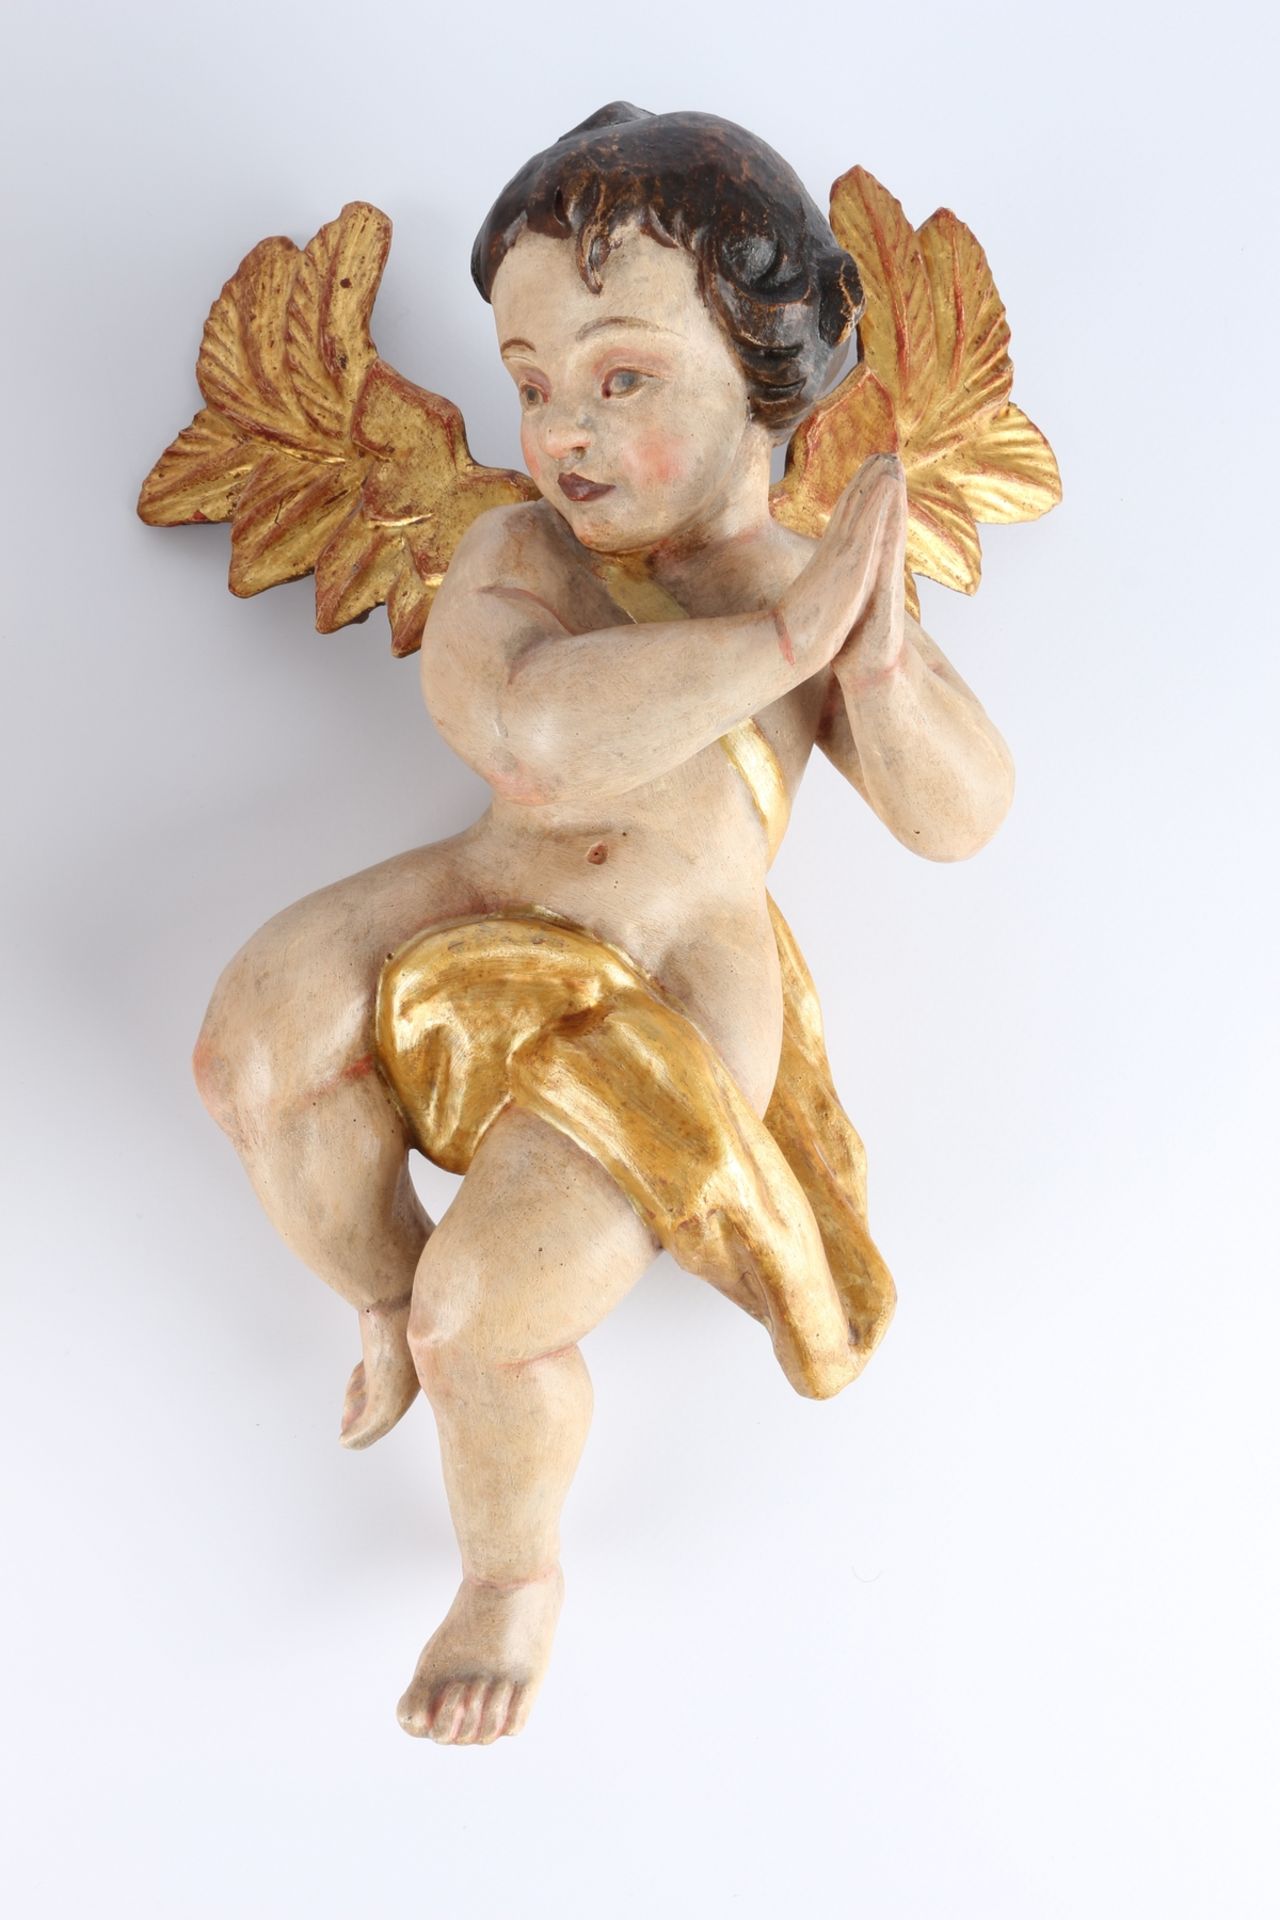 Großer Holz Cherub - Engel und 2 Putten, large wooden cherub - angels and 2 putti, - Image 4 of 5